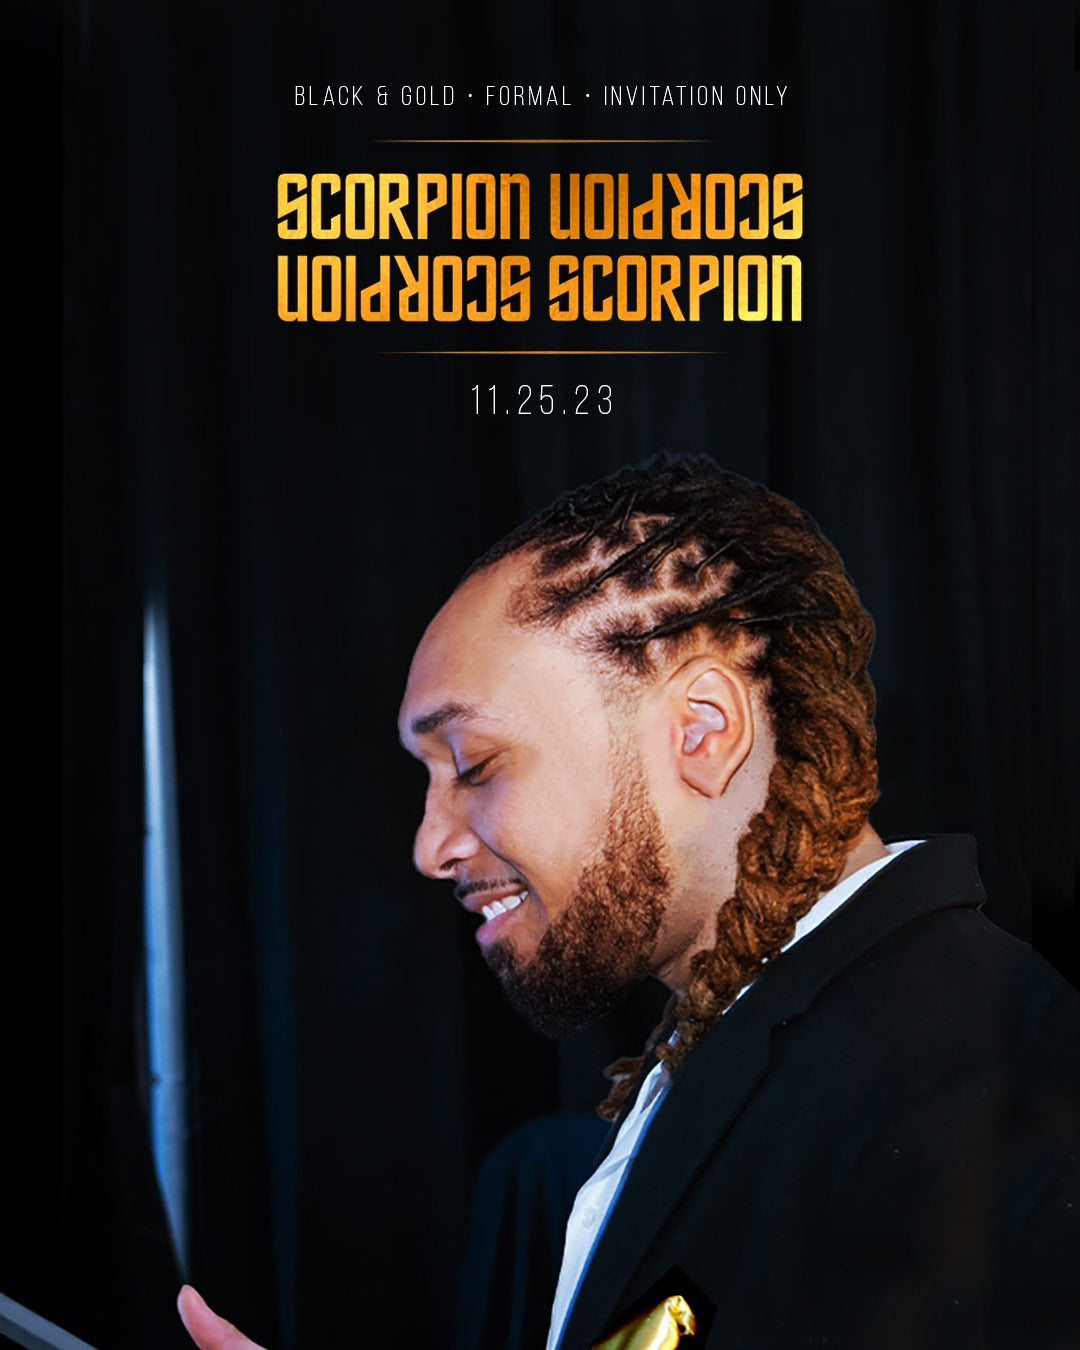 Scorpion Gala  "The Scorpio Season Finale" | Invite Only